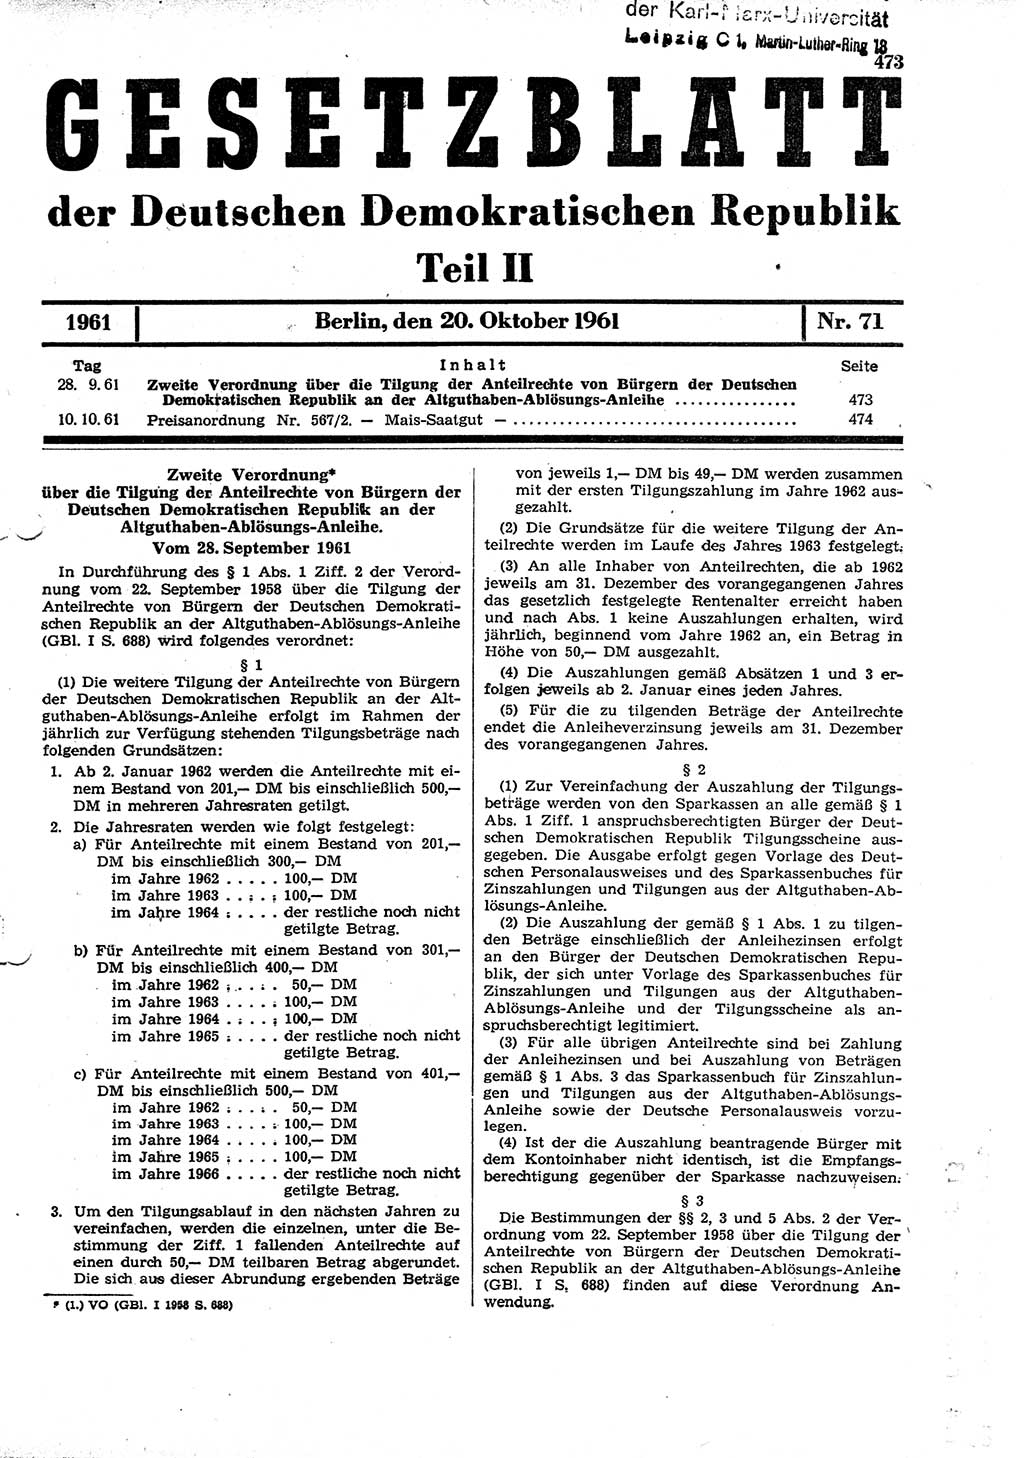 Gesetzblatt (GBl.) der Deutschen Demokratischen Republik (DDR) Teil ⅠⅠ 1961, Seite 473 (GBl. DDR ⅠⅠ 1961, S. 473)